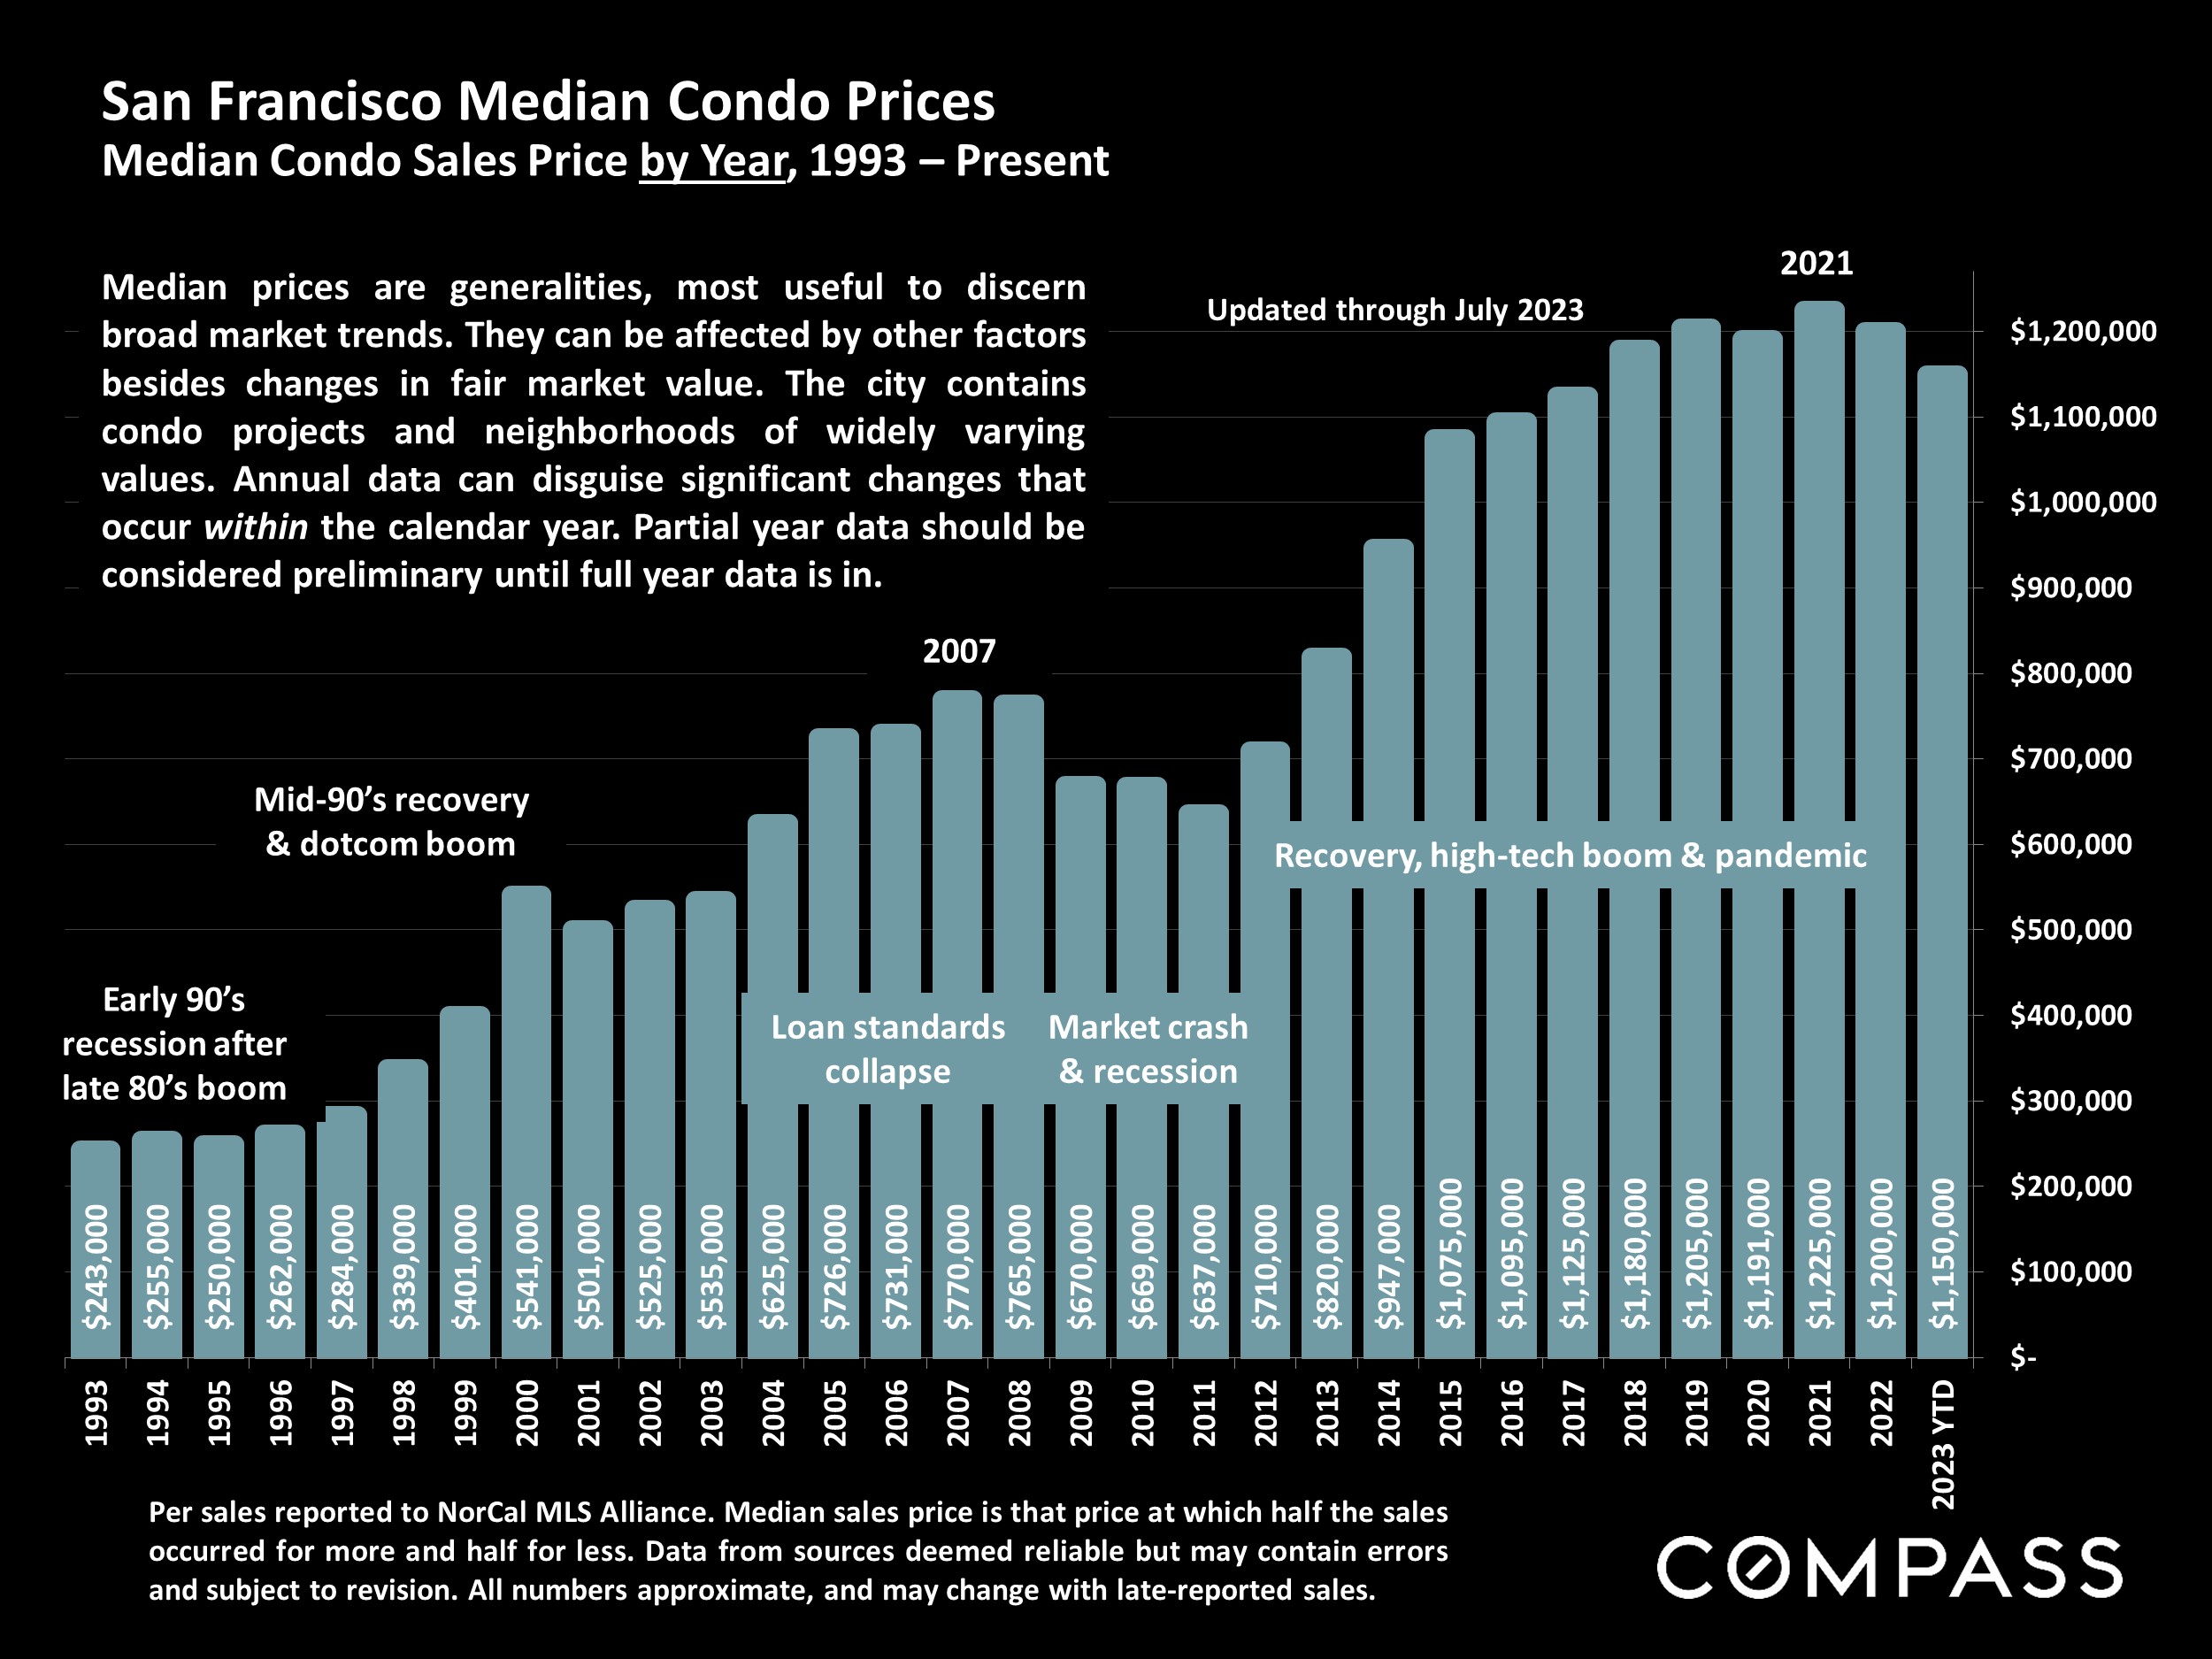 San Francisco Median Condo Prices Median Condo Sales Price by Year, 1993 - Present